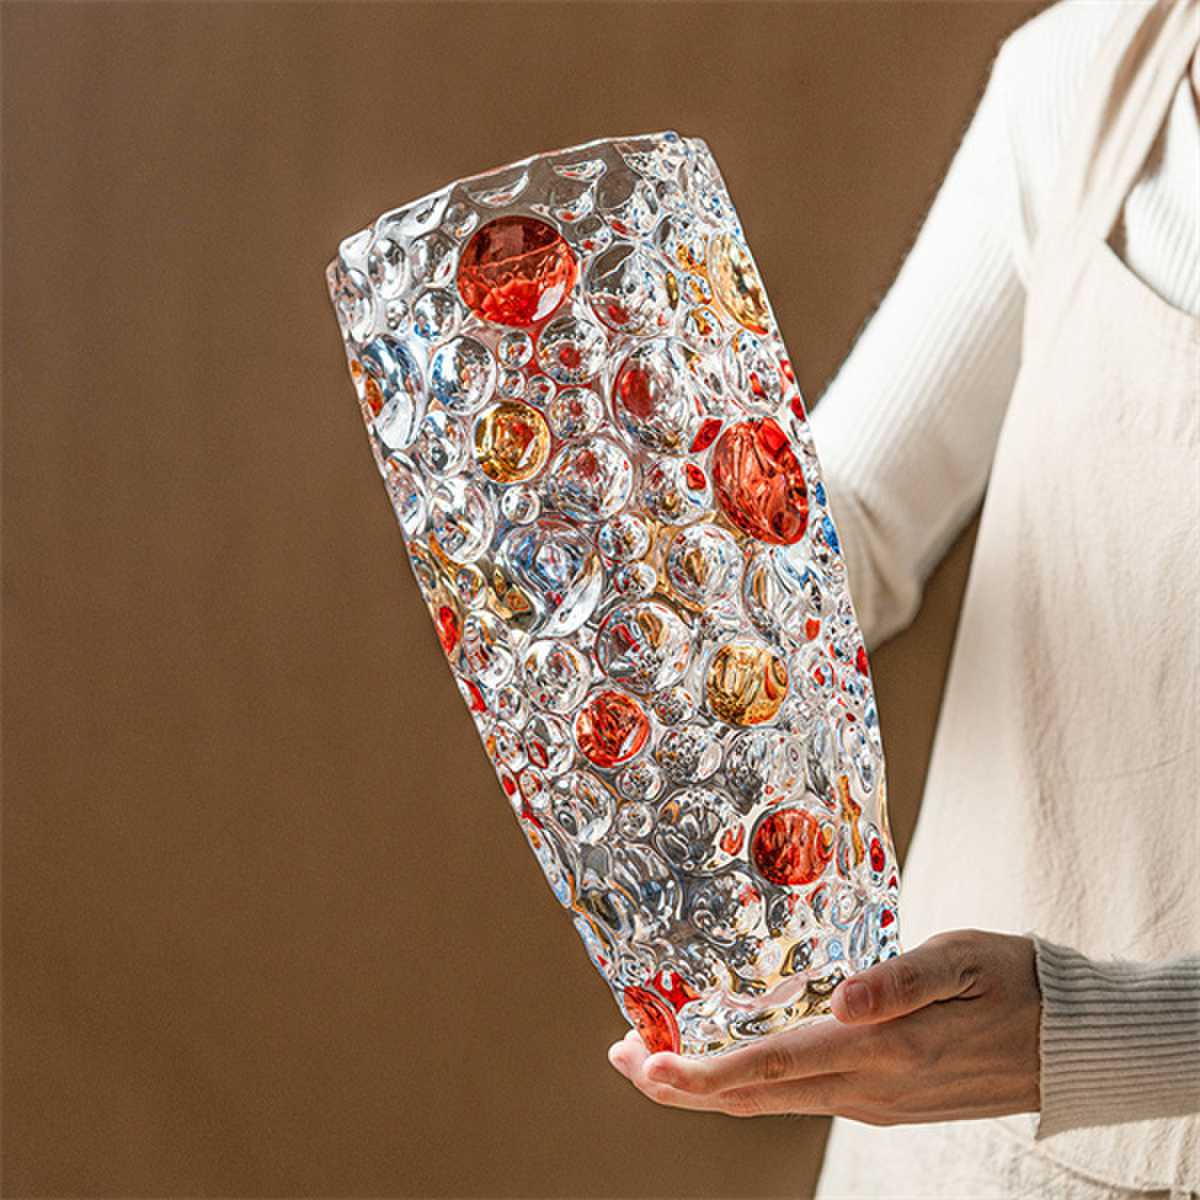 Colored polka dot glass vase